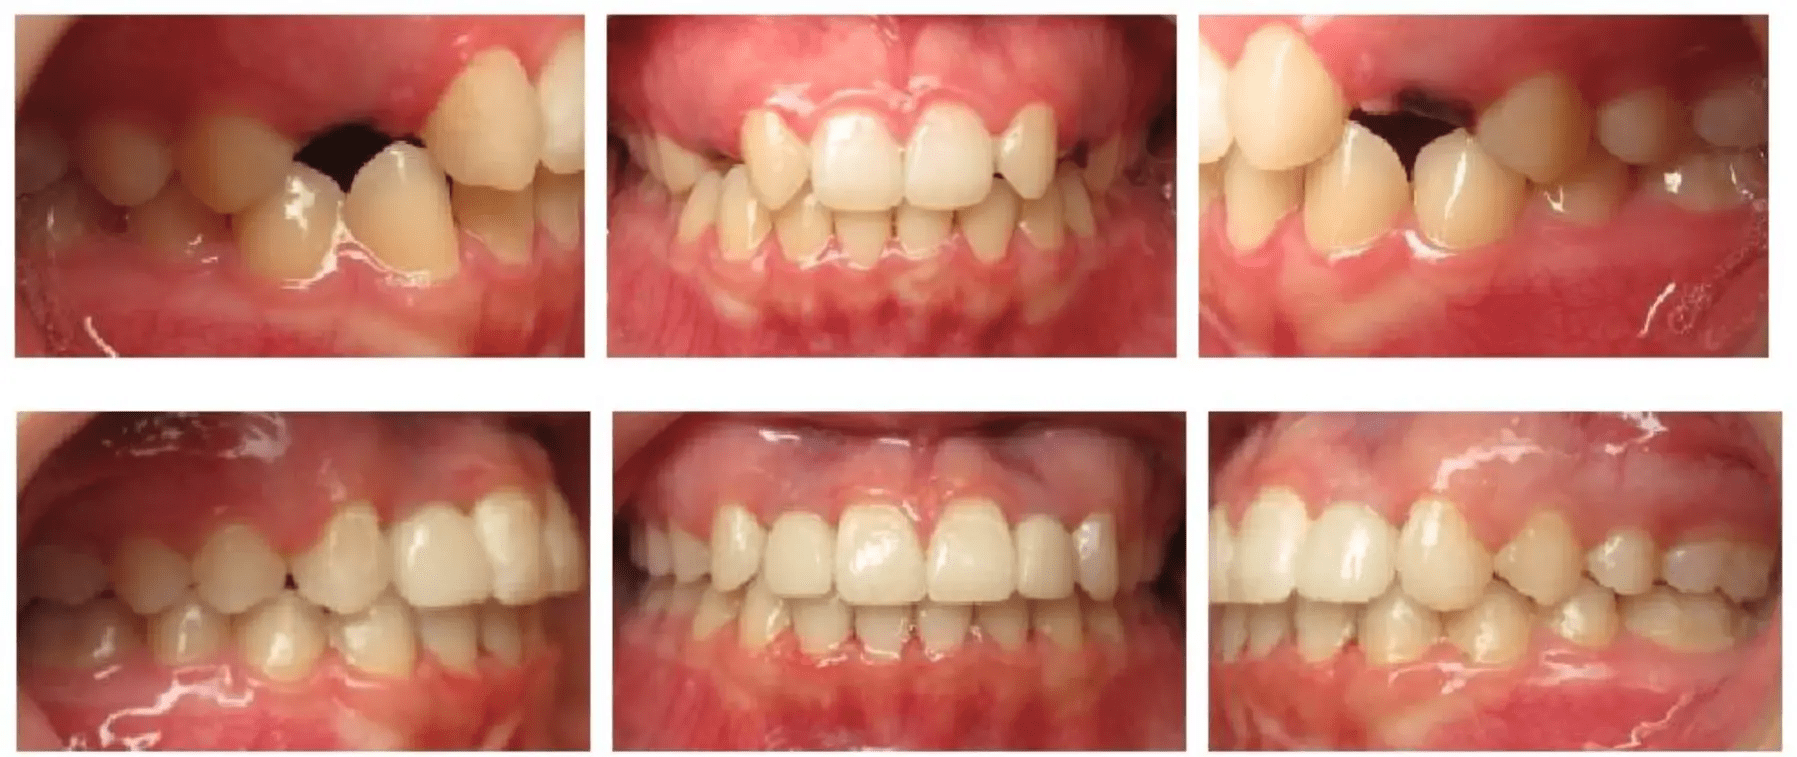 montgomery orthodontics